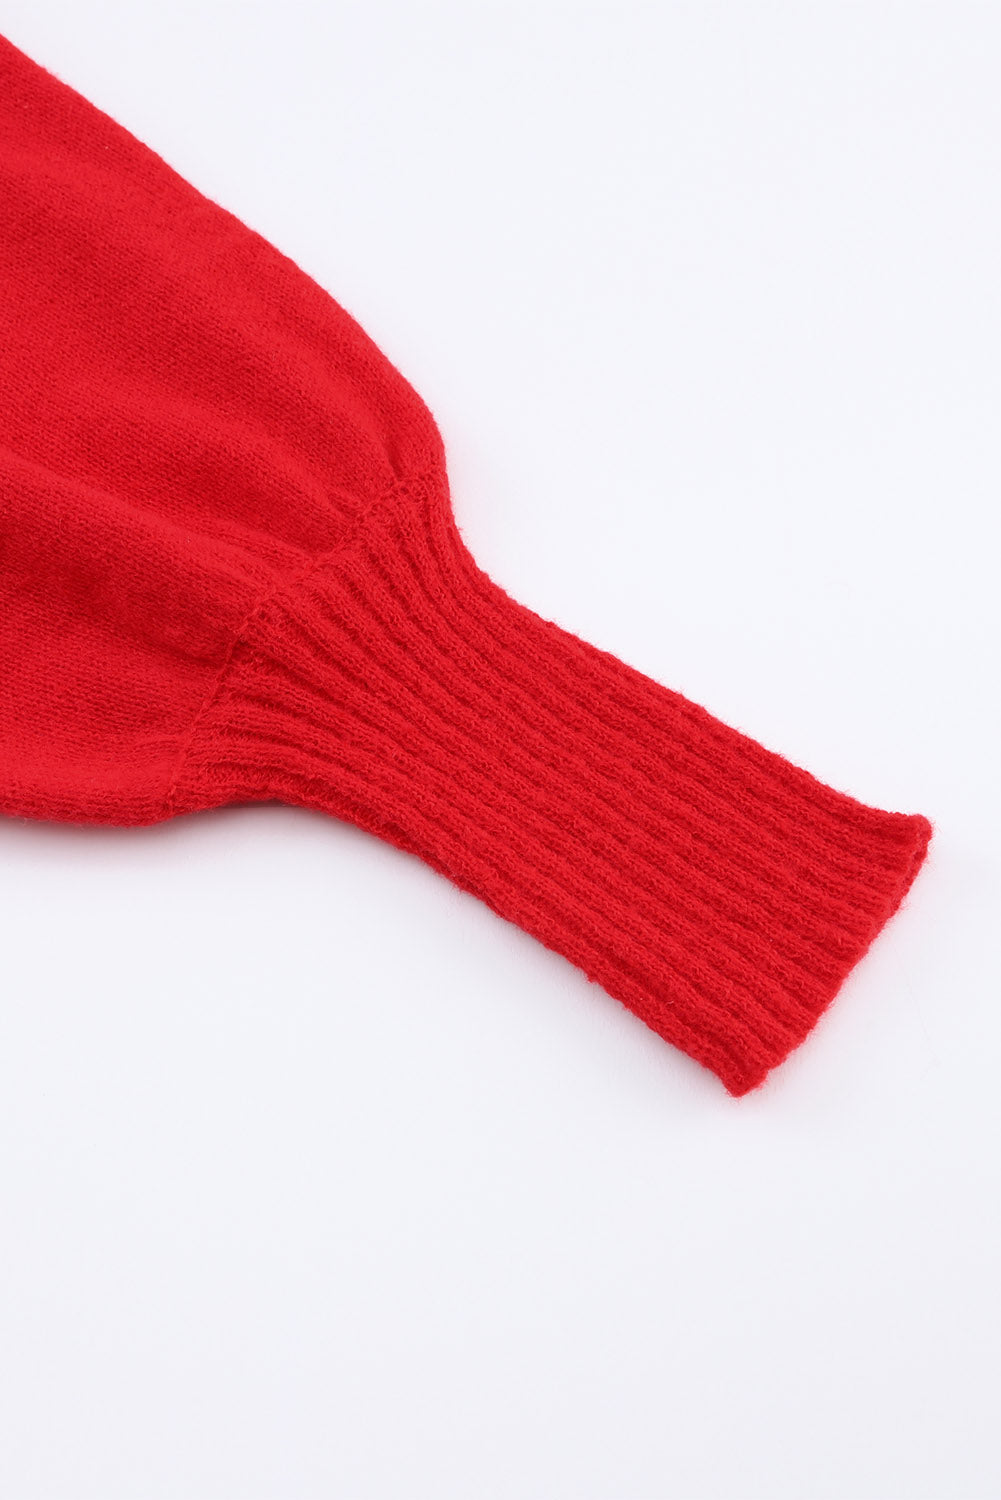 Trkaći crveni pulover s visokim ovratnikom s izvezenim LJUBAVNIM pismom